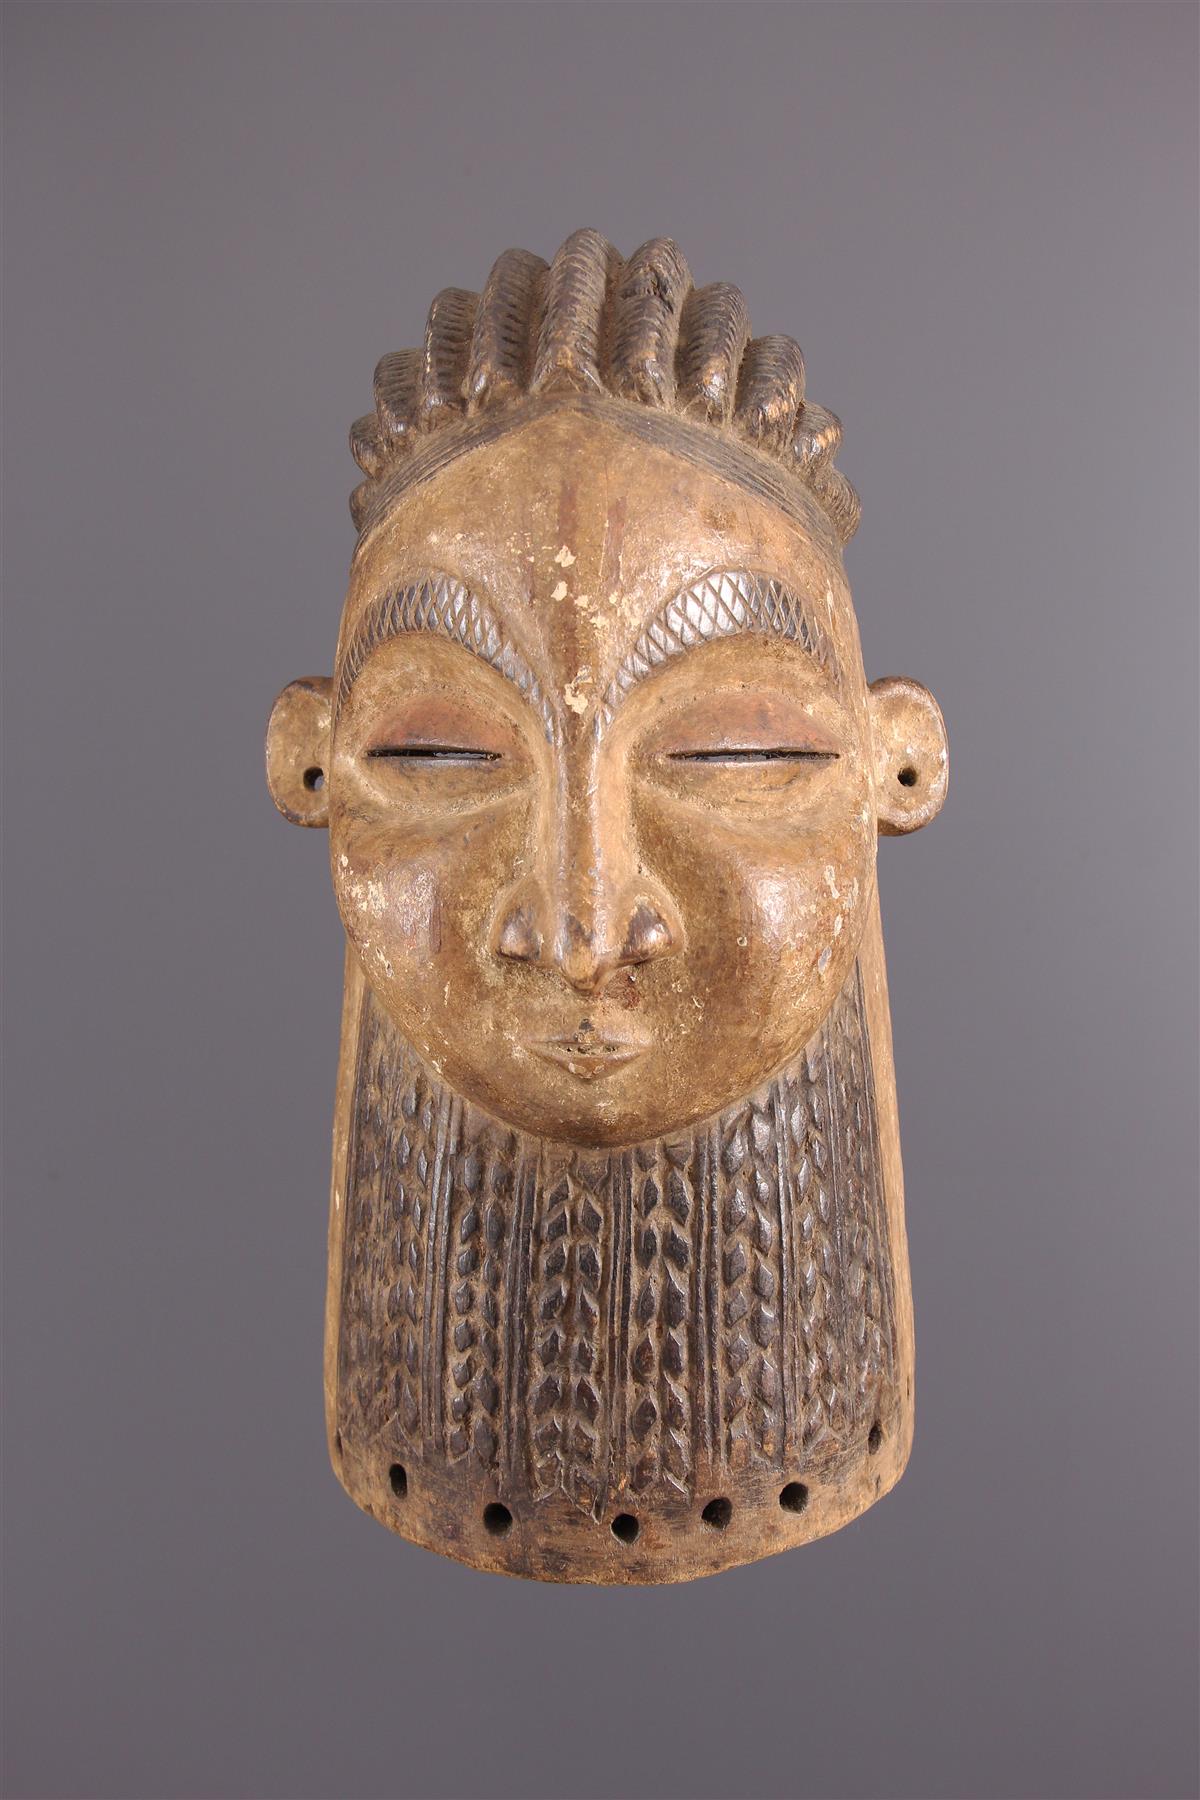 Luba maschera - Arte africana